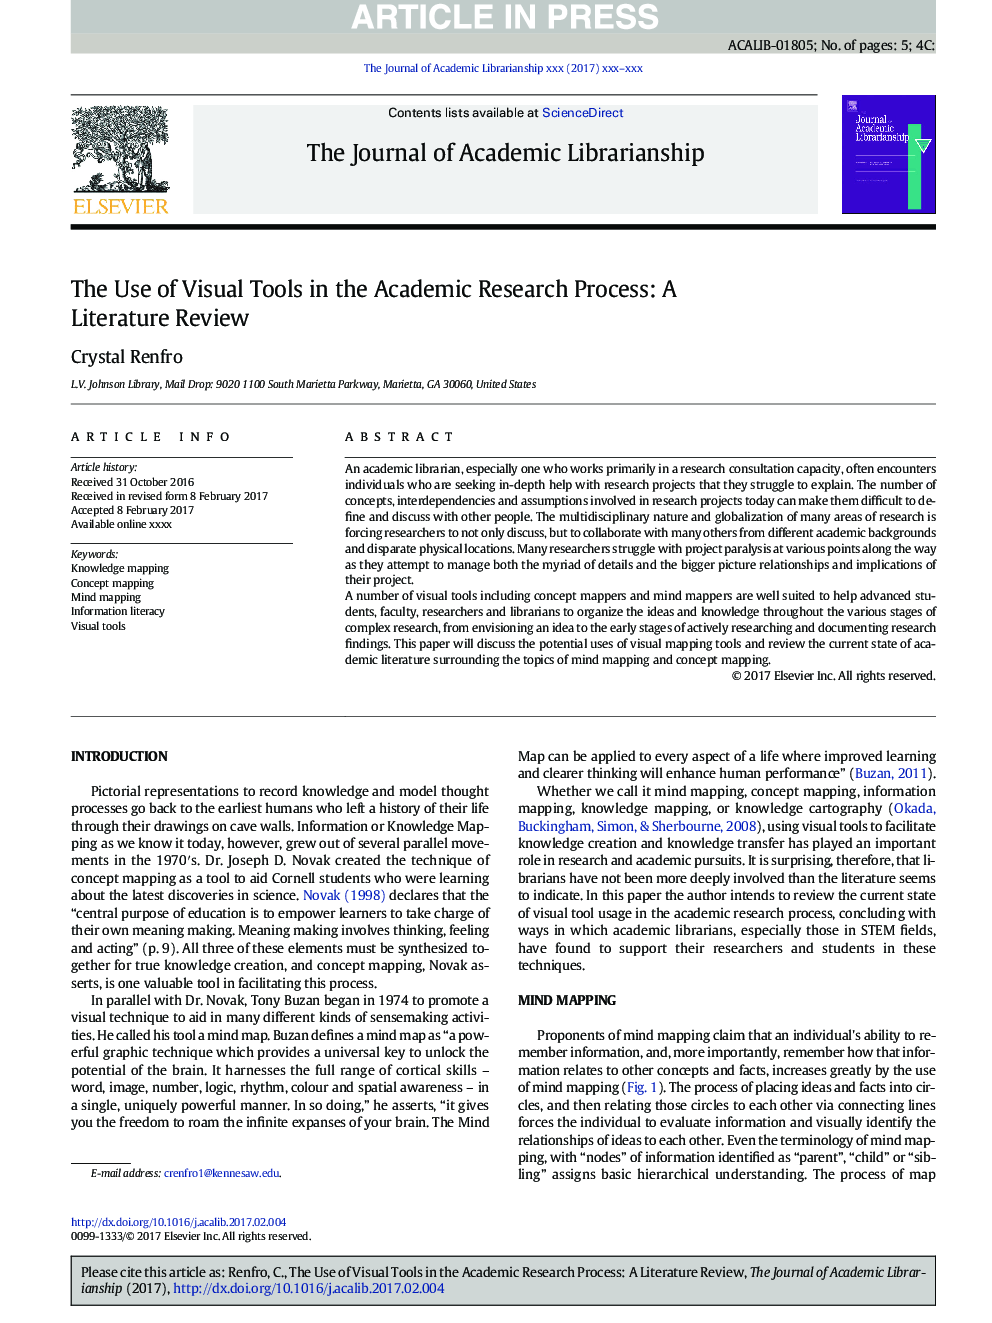 استفاده از ابزارهای ویژوال در فرآیند تحقیق علمی: نقد ادبیات 